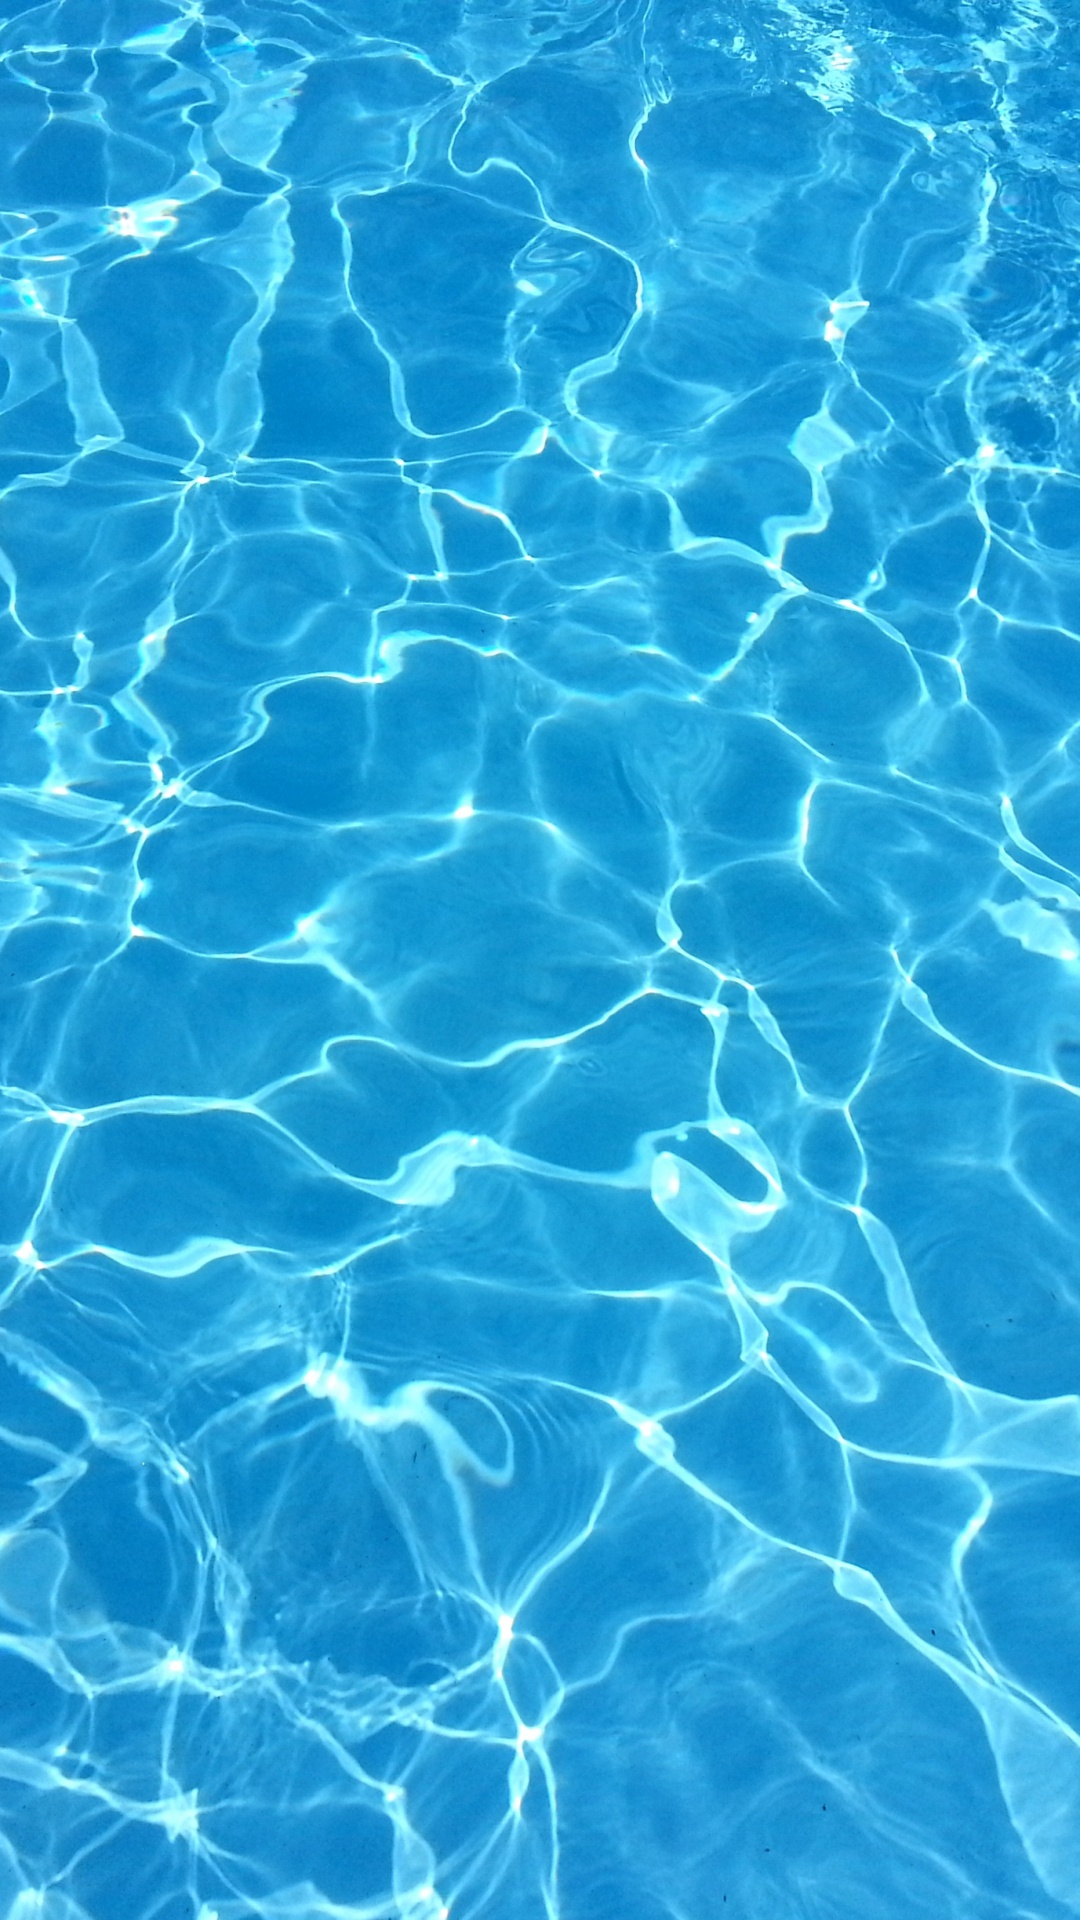 Телефон воде видео. Вода фон. Вода в бассейне. Голубая вода в бассейне. Голубая прозрачная вода.